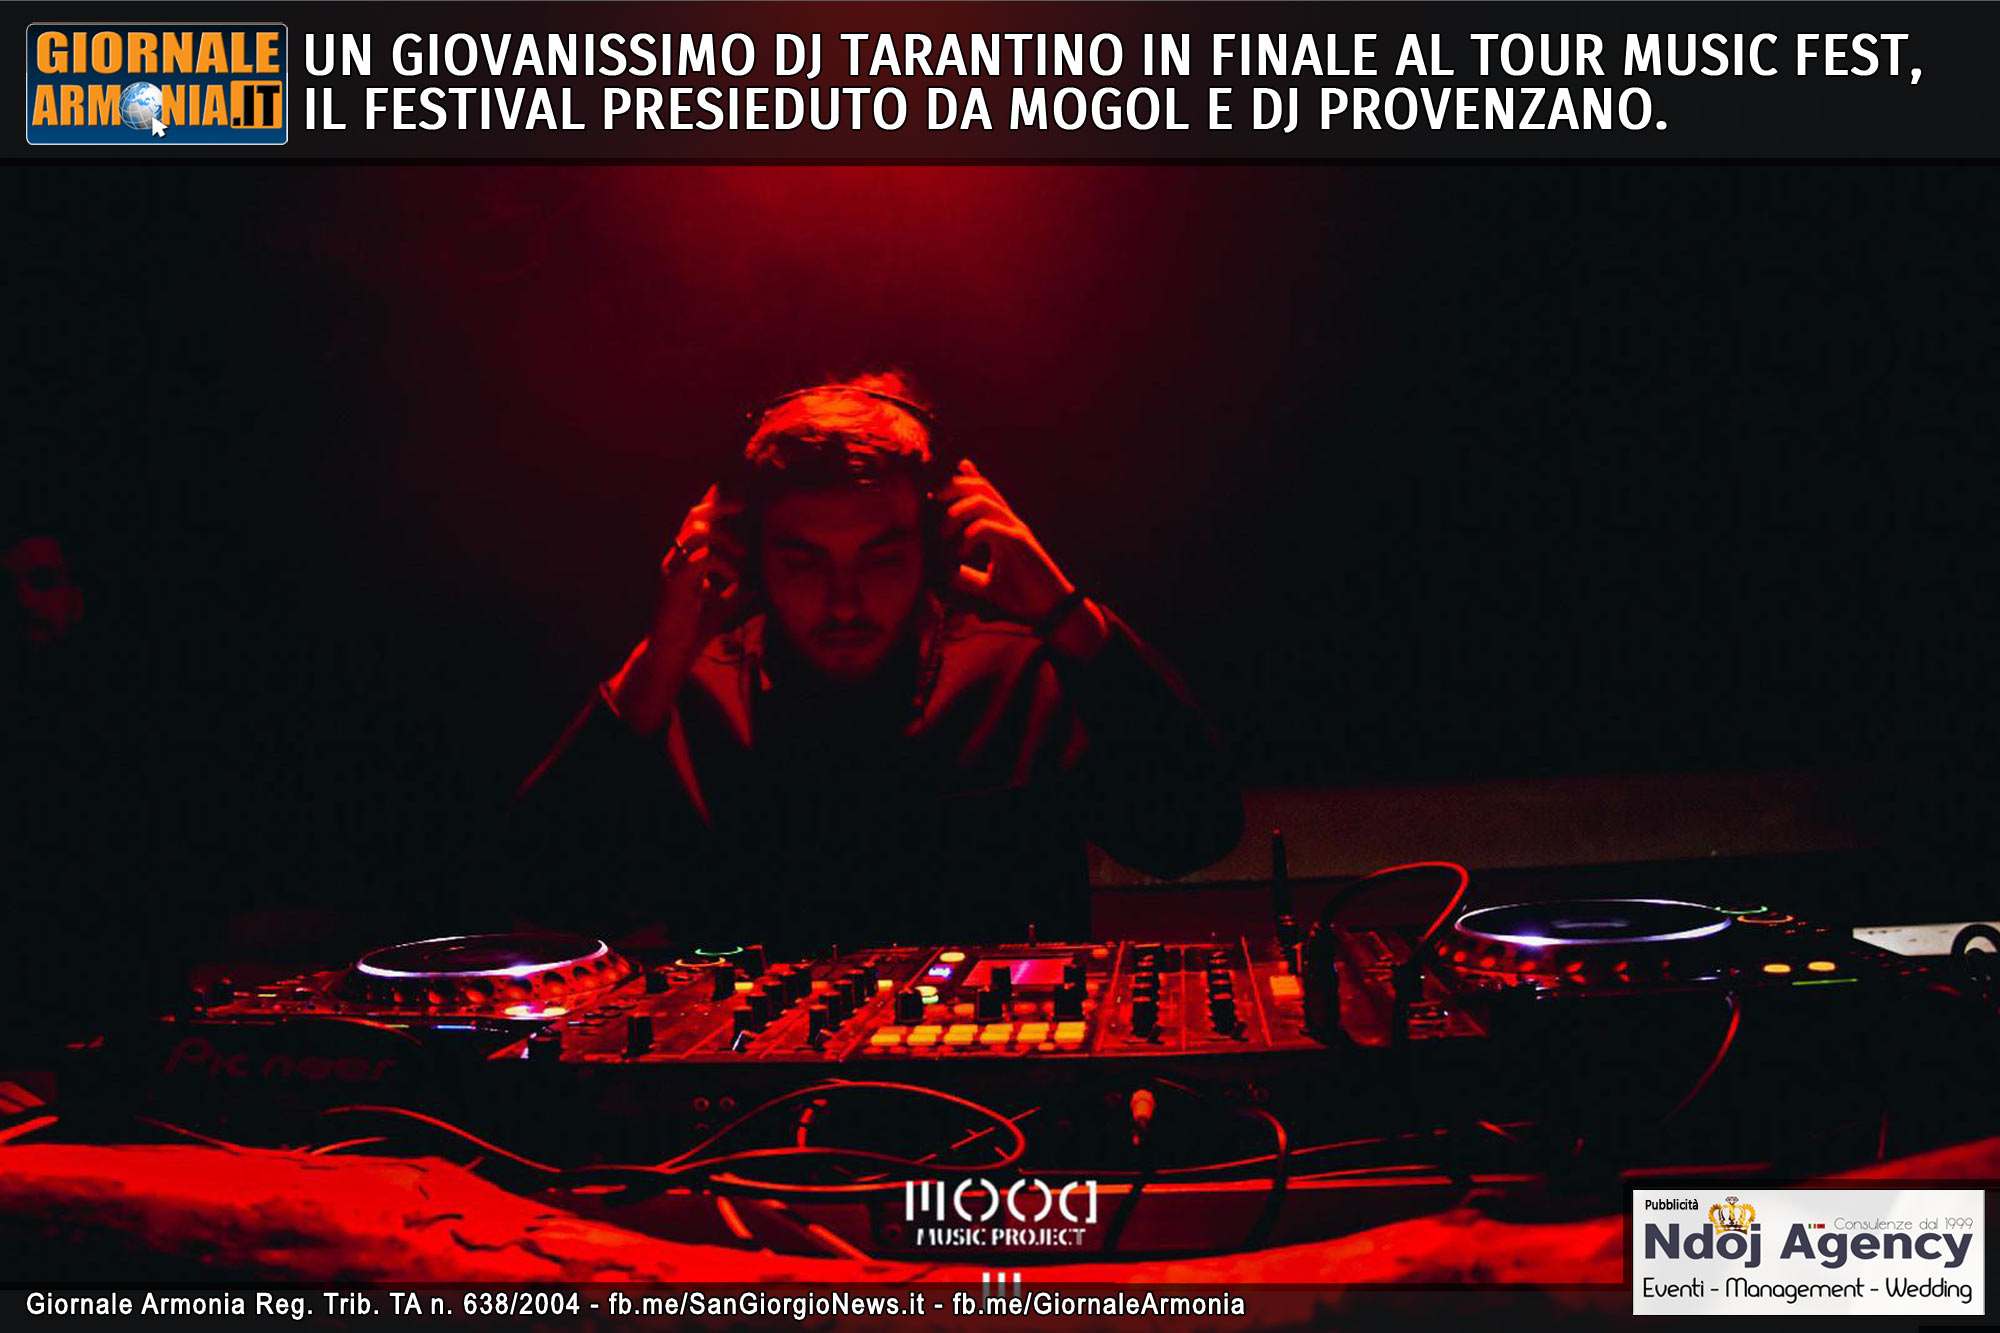 UN GIOVANISSIMO DJ TARANTINO IN FINALE AL TOUR MUSIC FEST, IL FESTIVAL PRESIEDUTO DA MOGOL E DJ PROVENZANO.